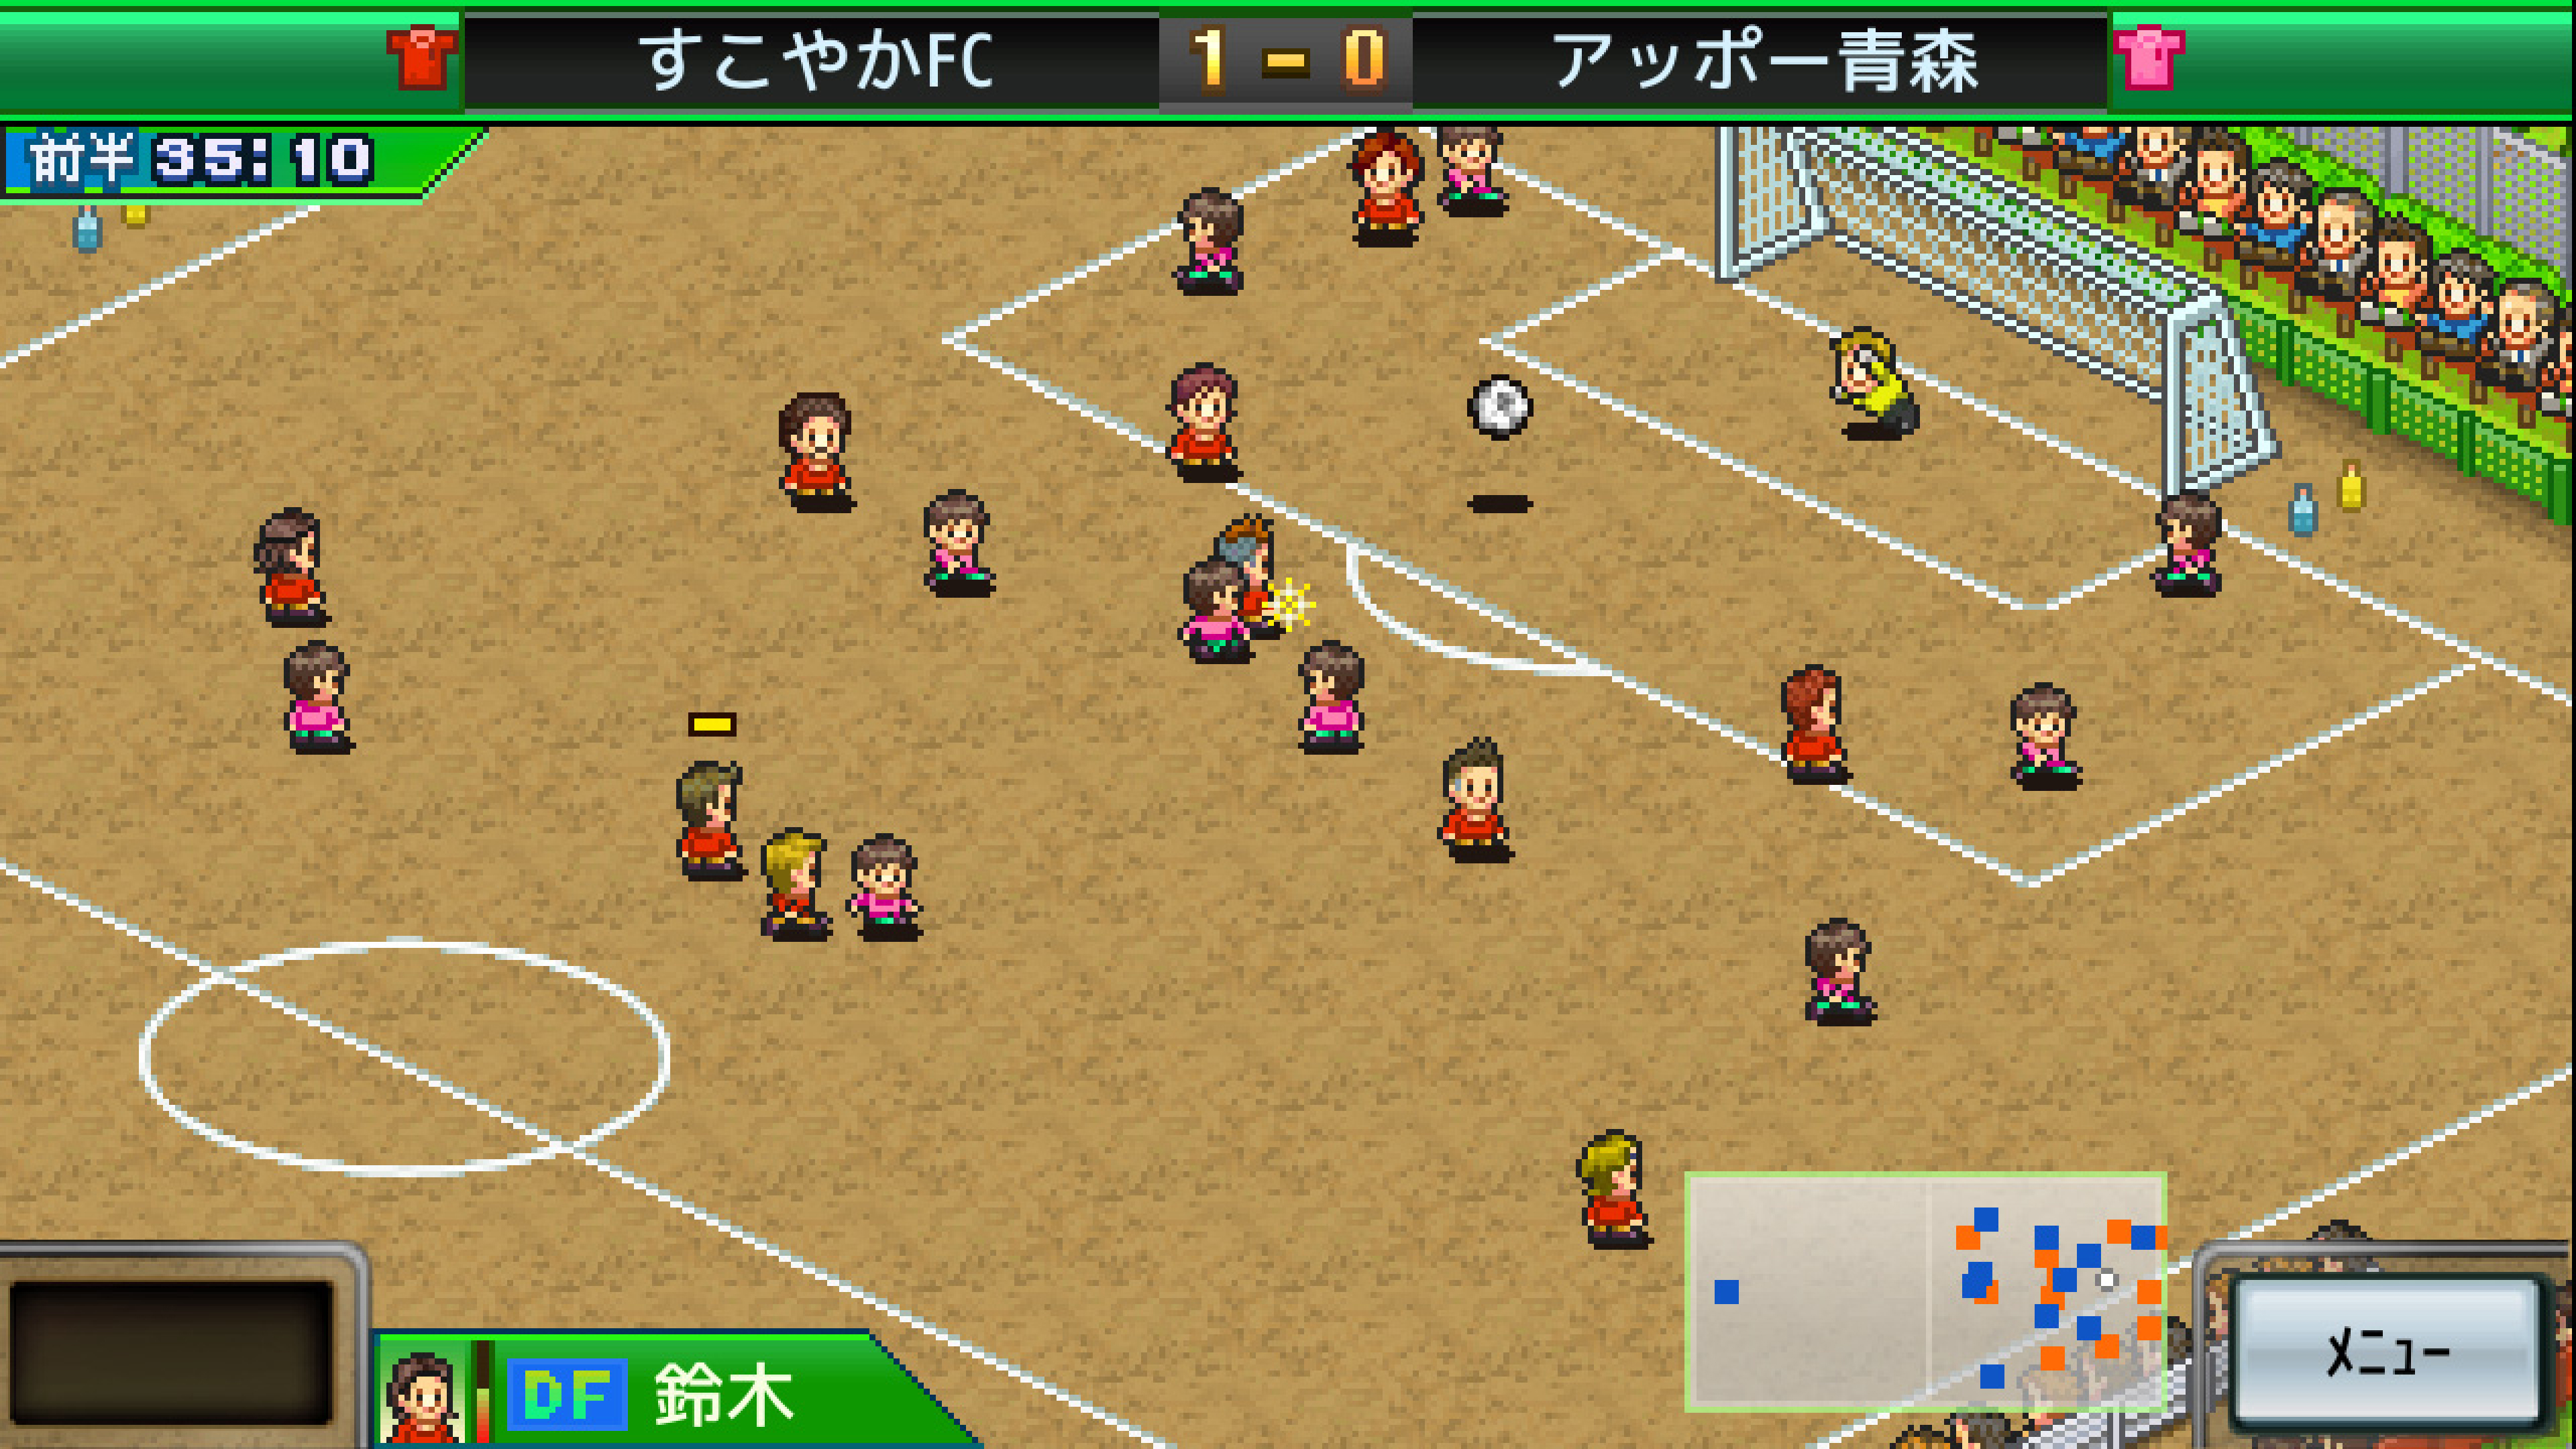 サッカークラブ物語 Ps4 4gamer